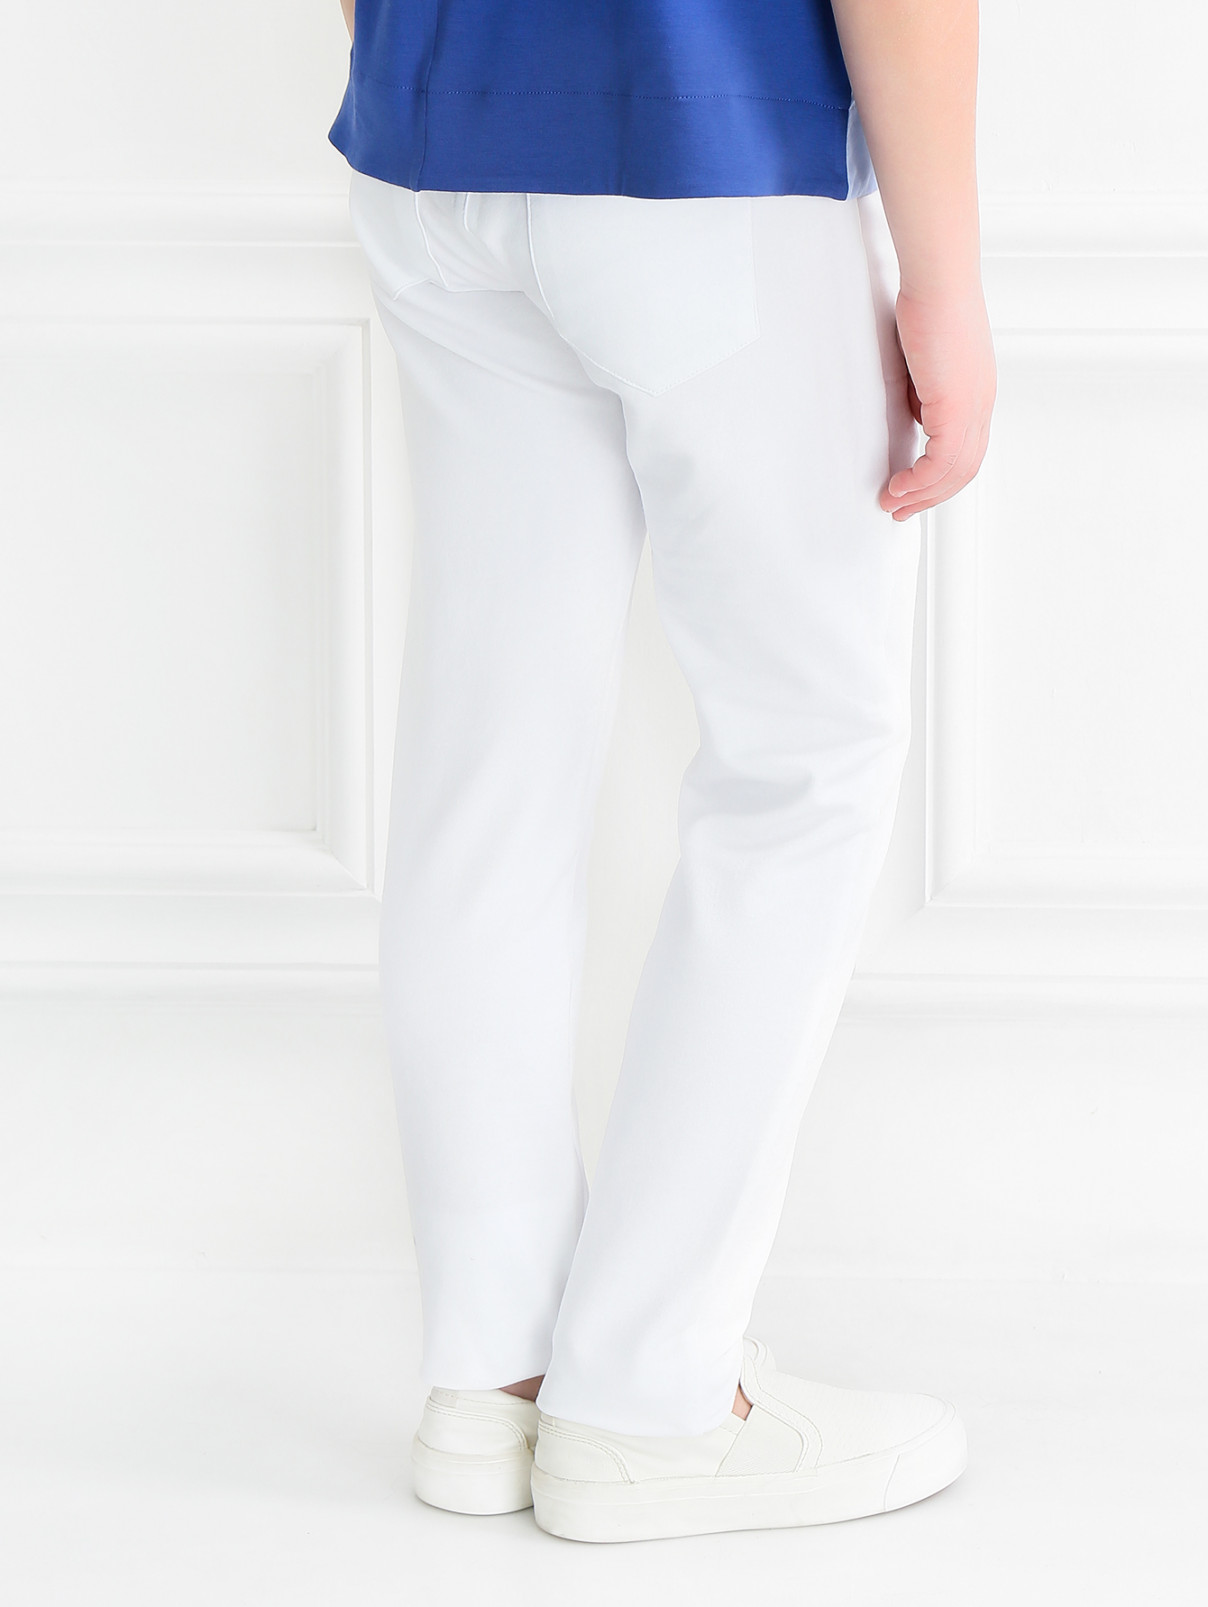 Трикотажные брюки расшитые бусинами и кристаллами Miss Blumarine  –  Модель Верх-Низ1  – Цвет:  Белый